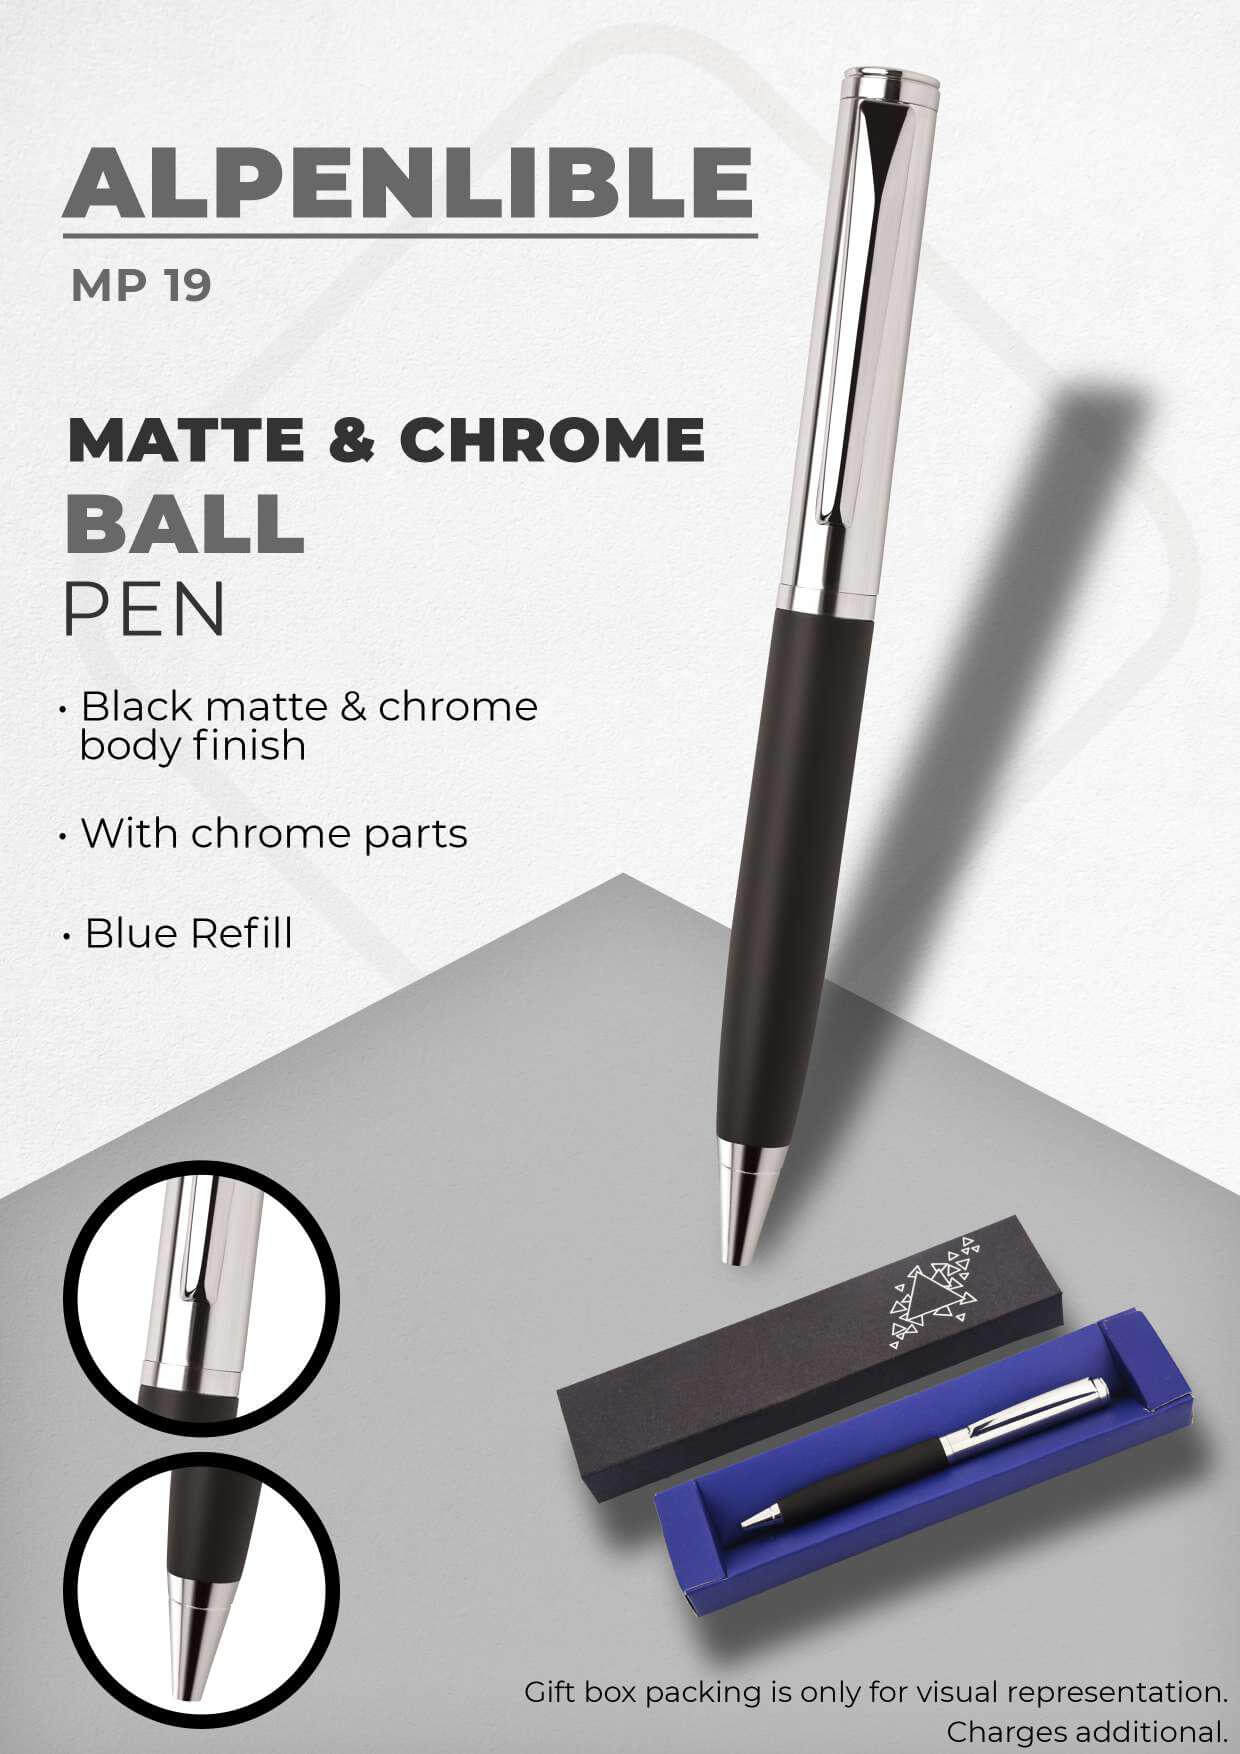 Matte & Chrome Ball Pen Alpenlible